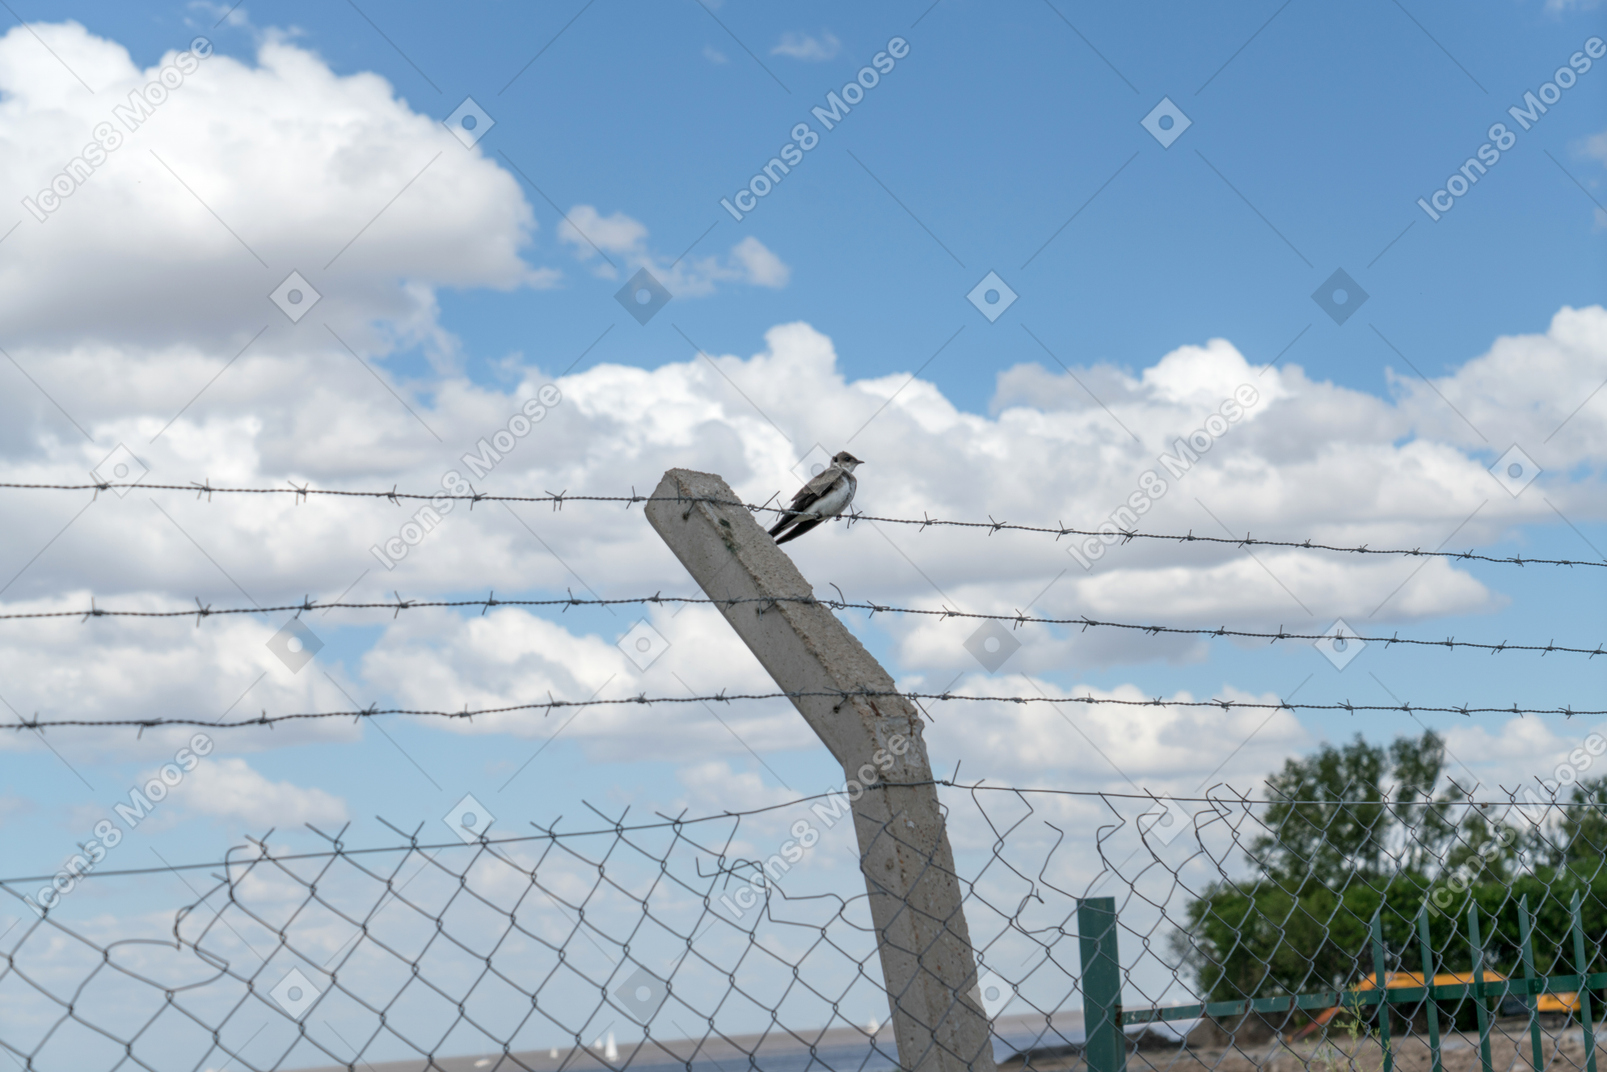 Vogel sitzt auf dem stacheligen zaun